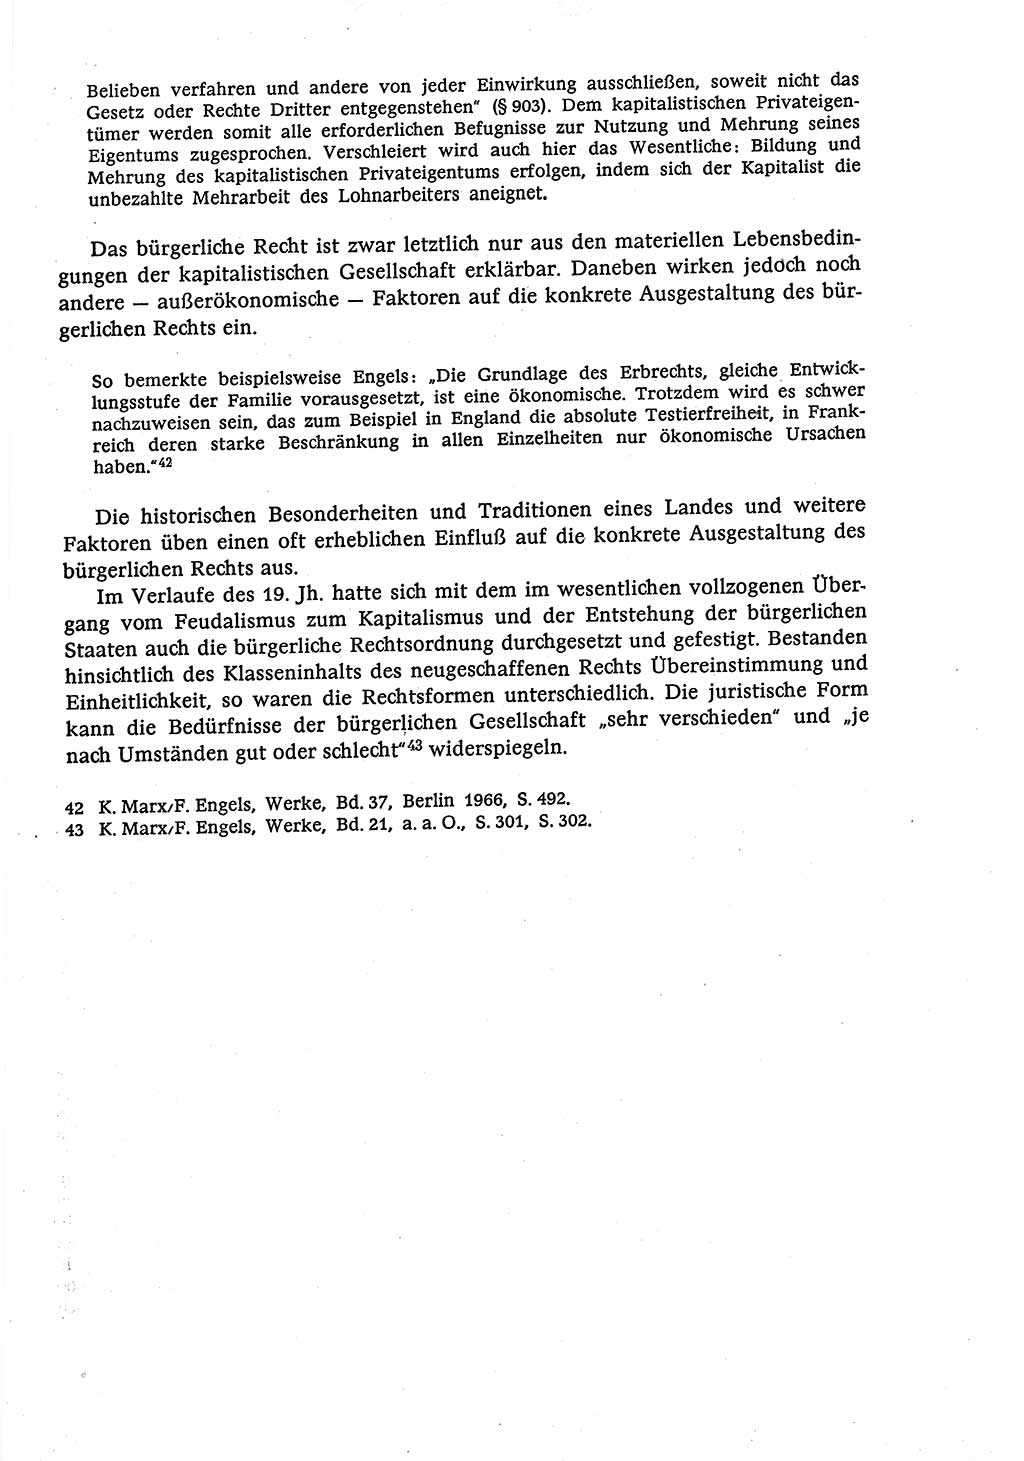 Marxistisch-leninistische (ML) Staats- und Rechtstheorie [Deutsche Demokratische Republik (DDR)], Lehrbuch 1980, Seite 137 (ML St.-R.-Th. DDR Lb. 1980, S. 137)